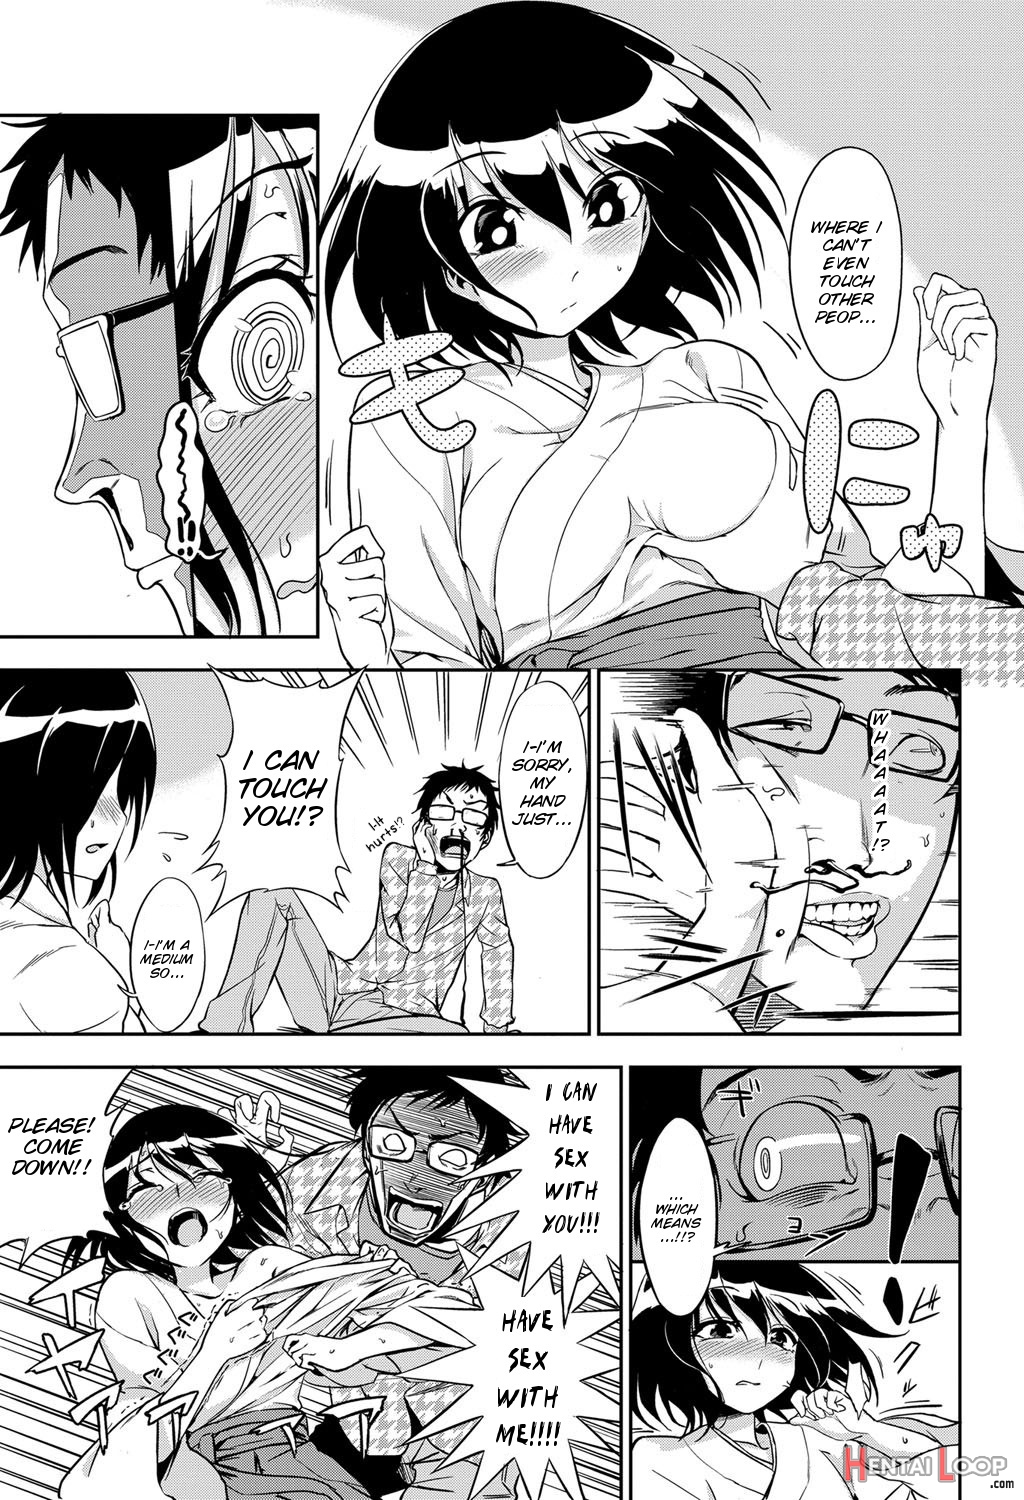 Joubutsu Shimasho page 5